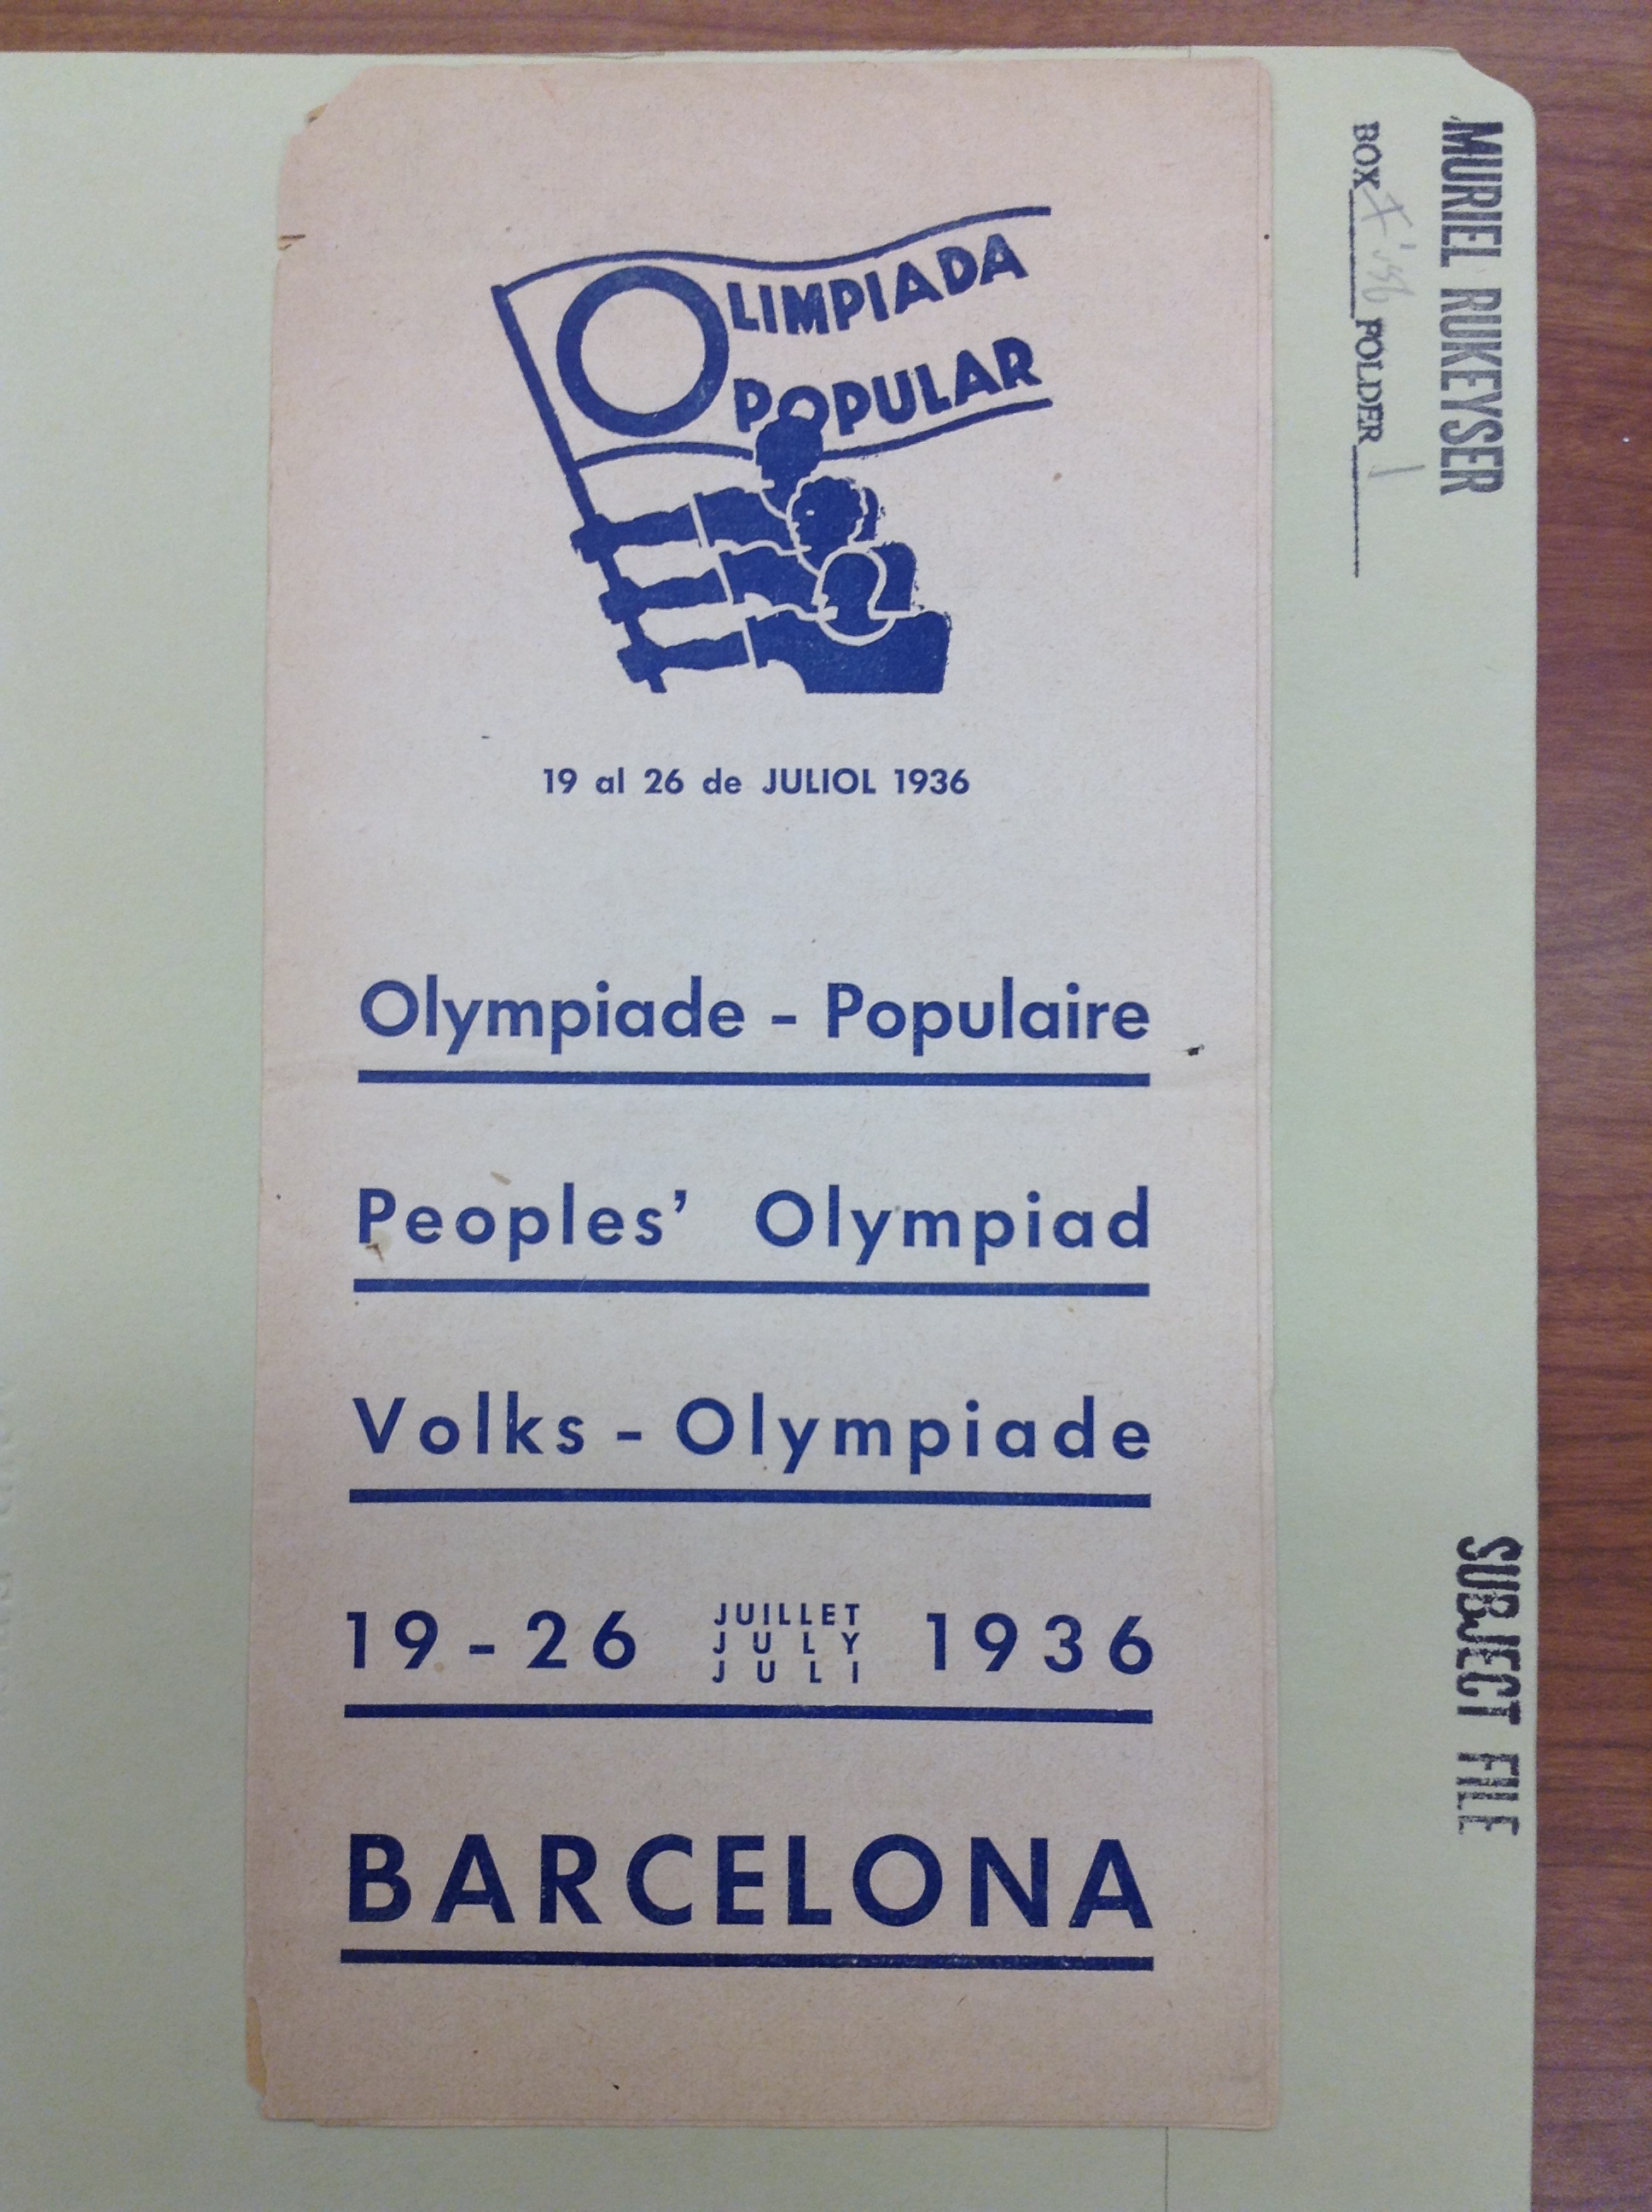 Olympiad flyer